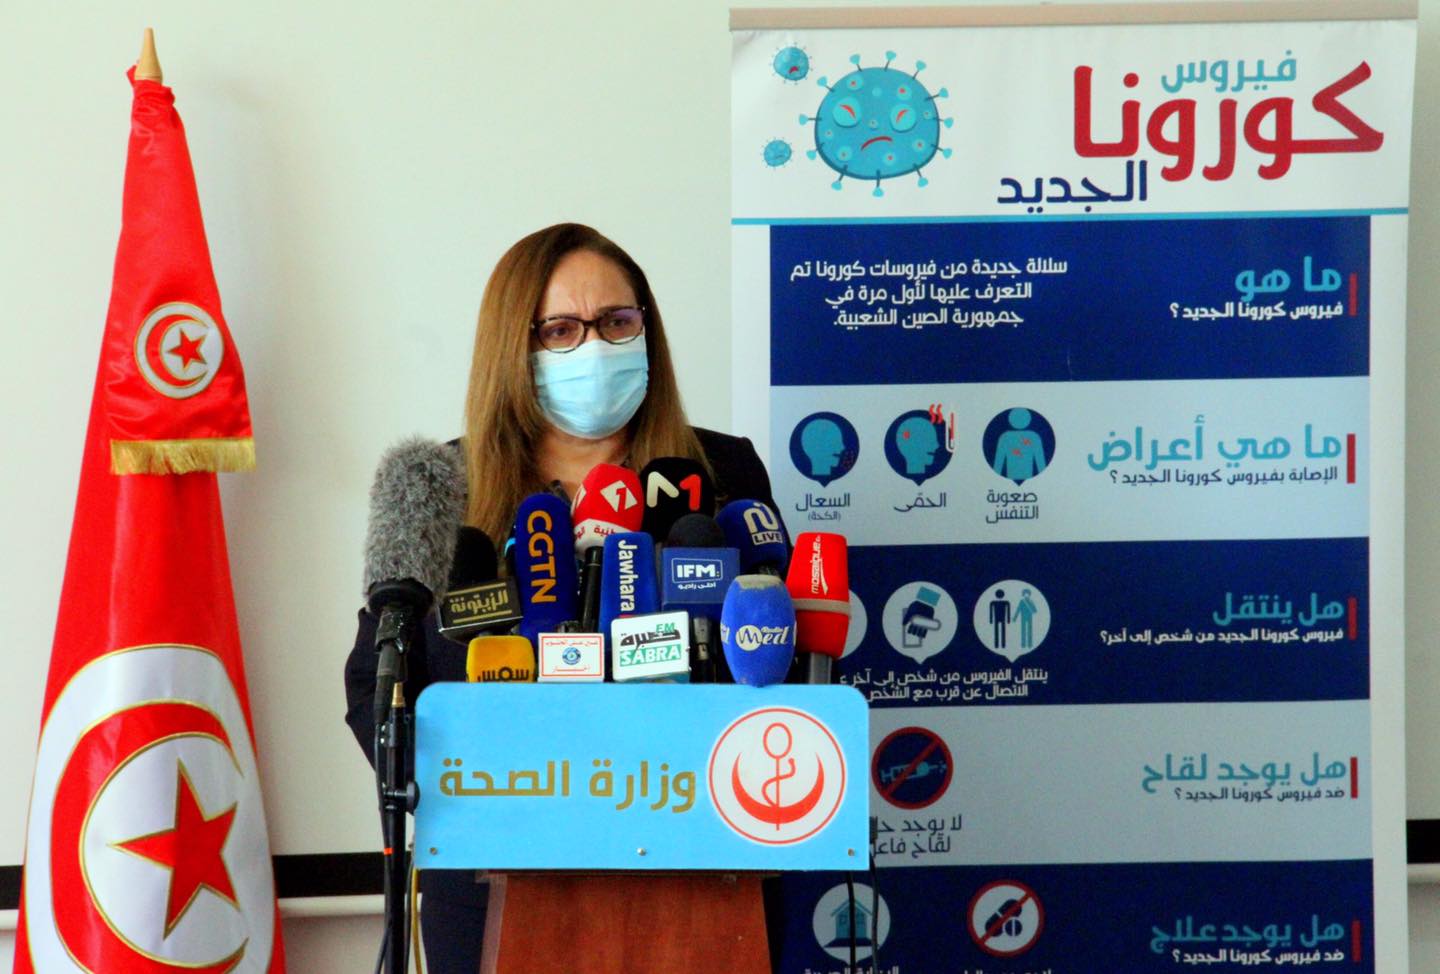 Tunisie-Situation sanitaire critique: Une délégation du ministère de la Santé se rend à Béja